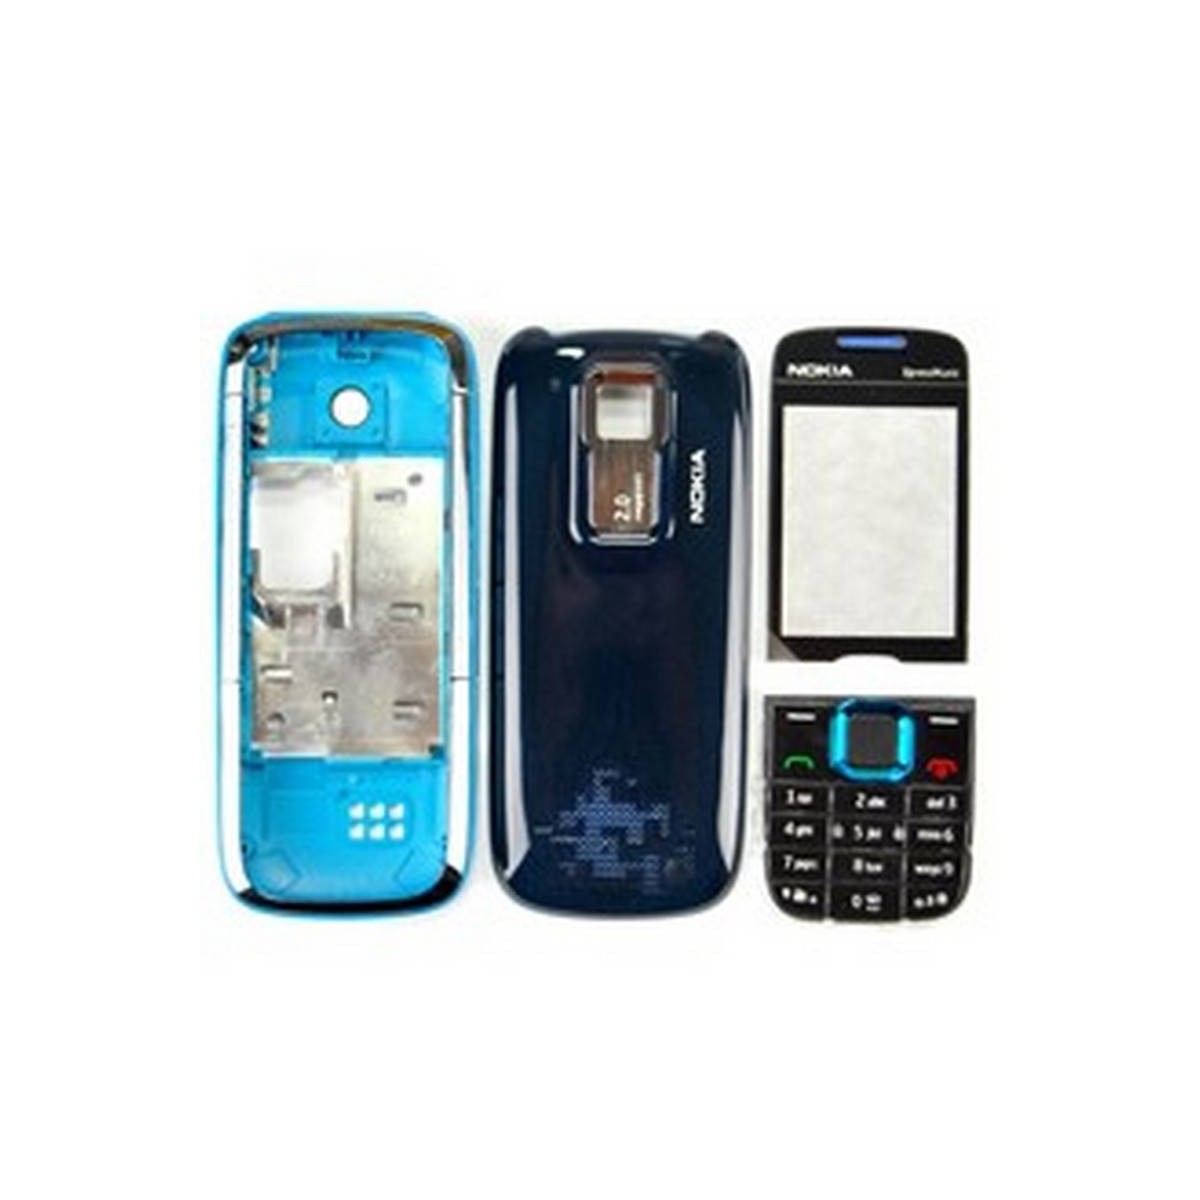 Carcaça Nokia 5130 Preto com Azul Completa